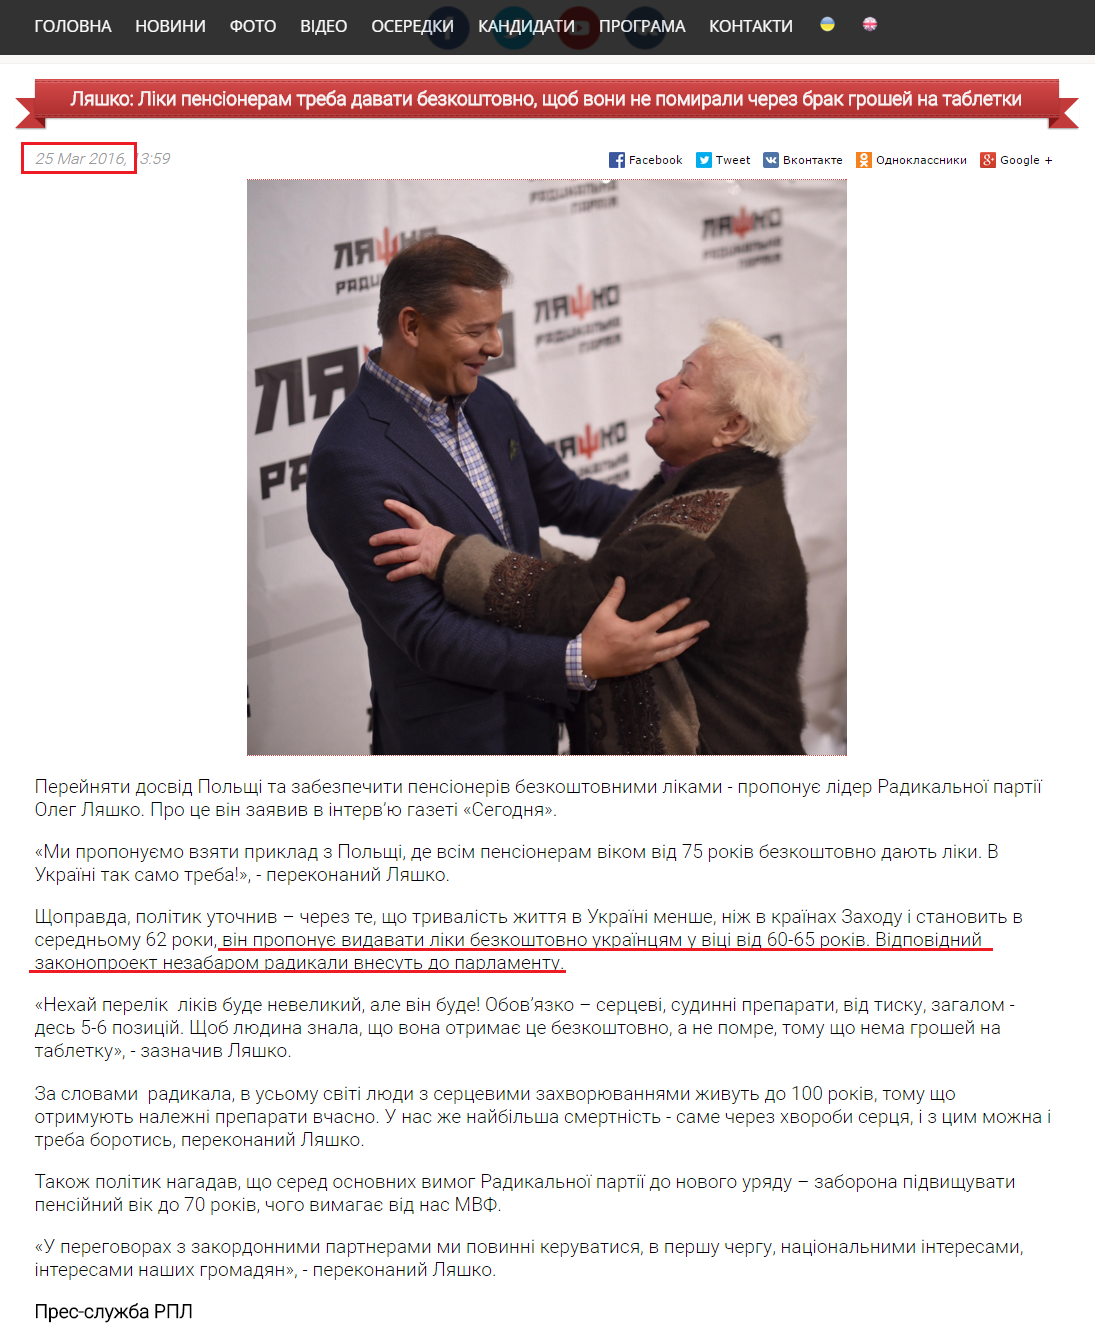 http://liashko.ua/news/general/1888-lyashko-hoche-shob-pensioneram-vidavali-liki-bezkoshtovno